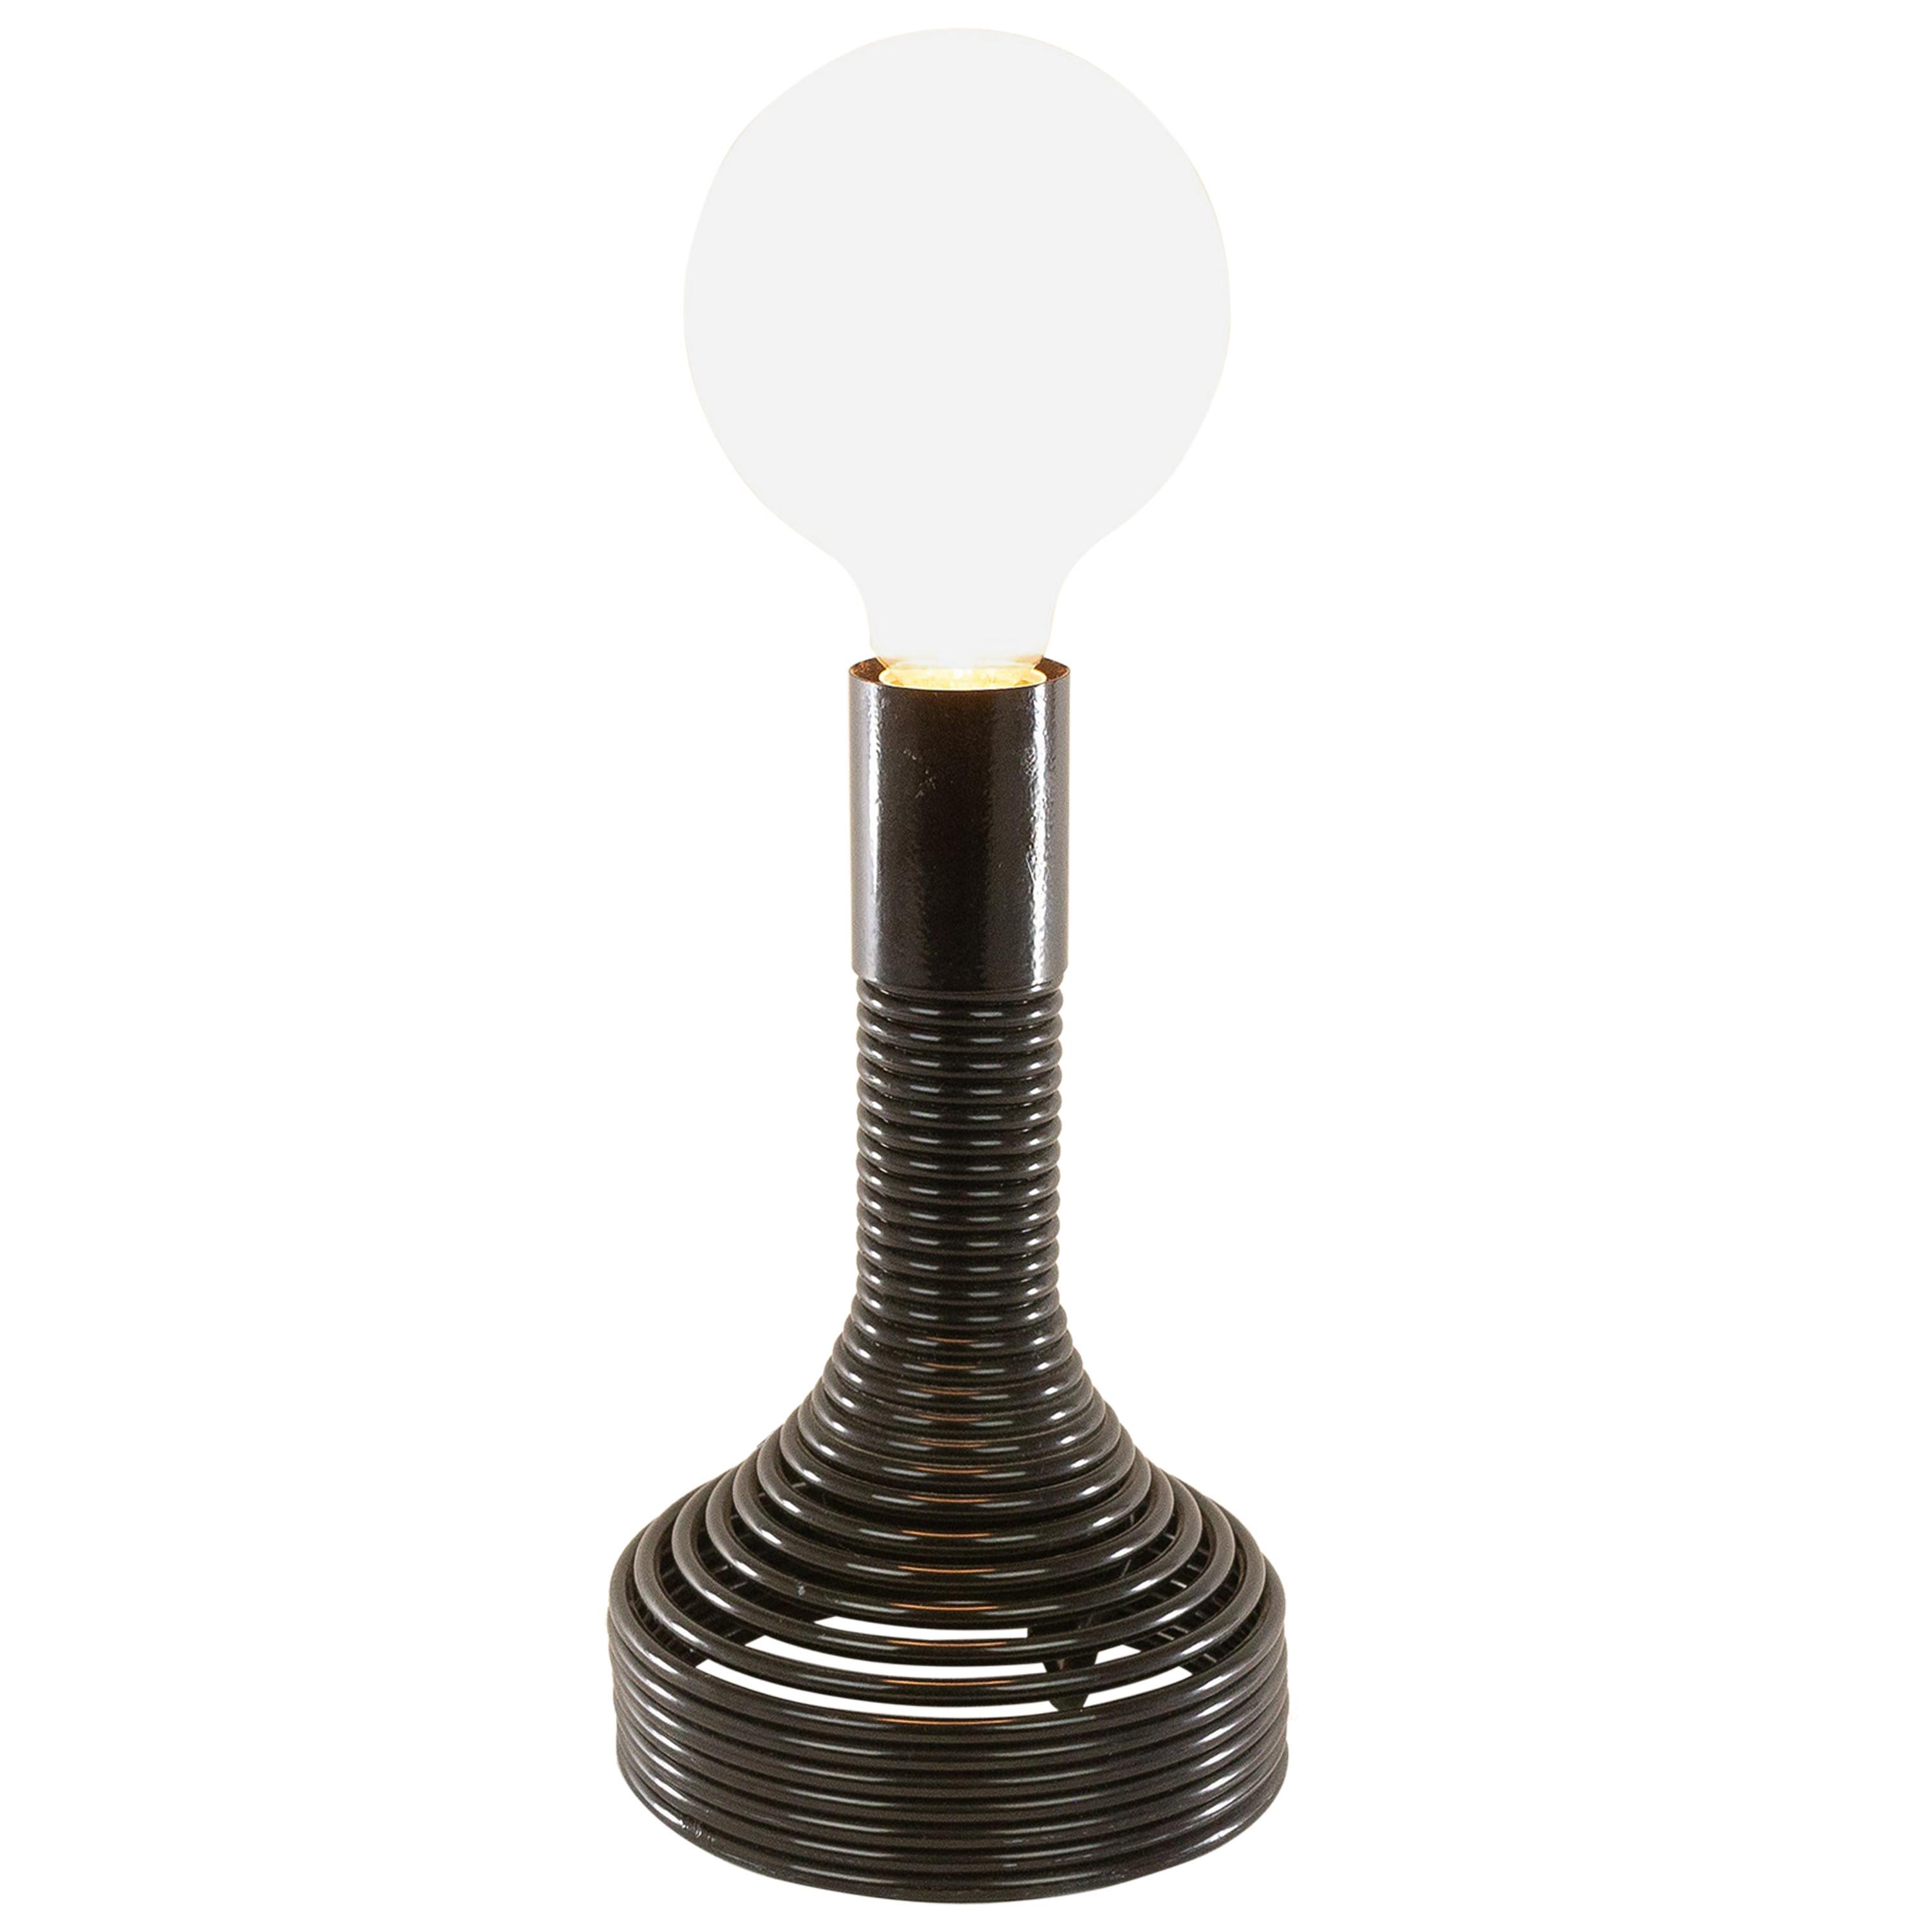 Spirale-Tischlampe von Angelo Mangiarotti für Kerzen, 1970er Jahre